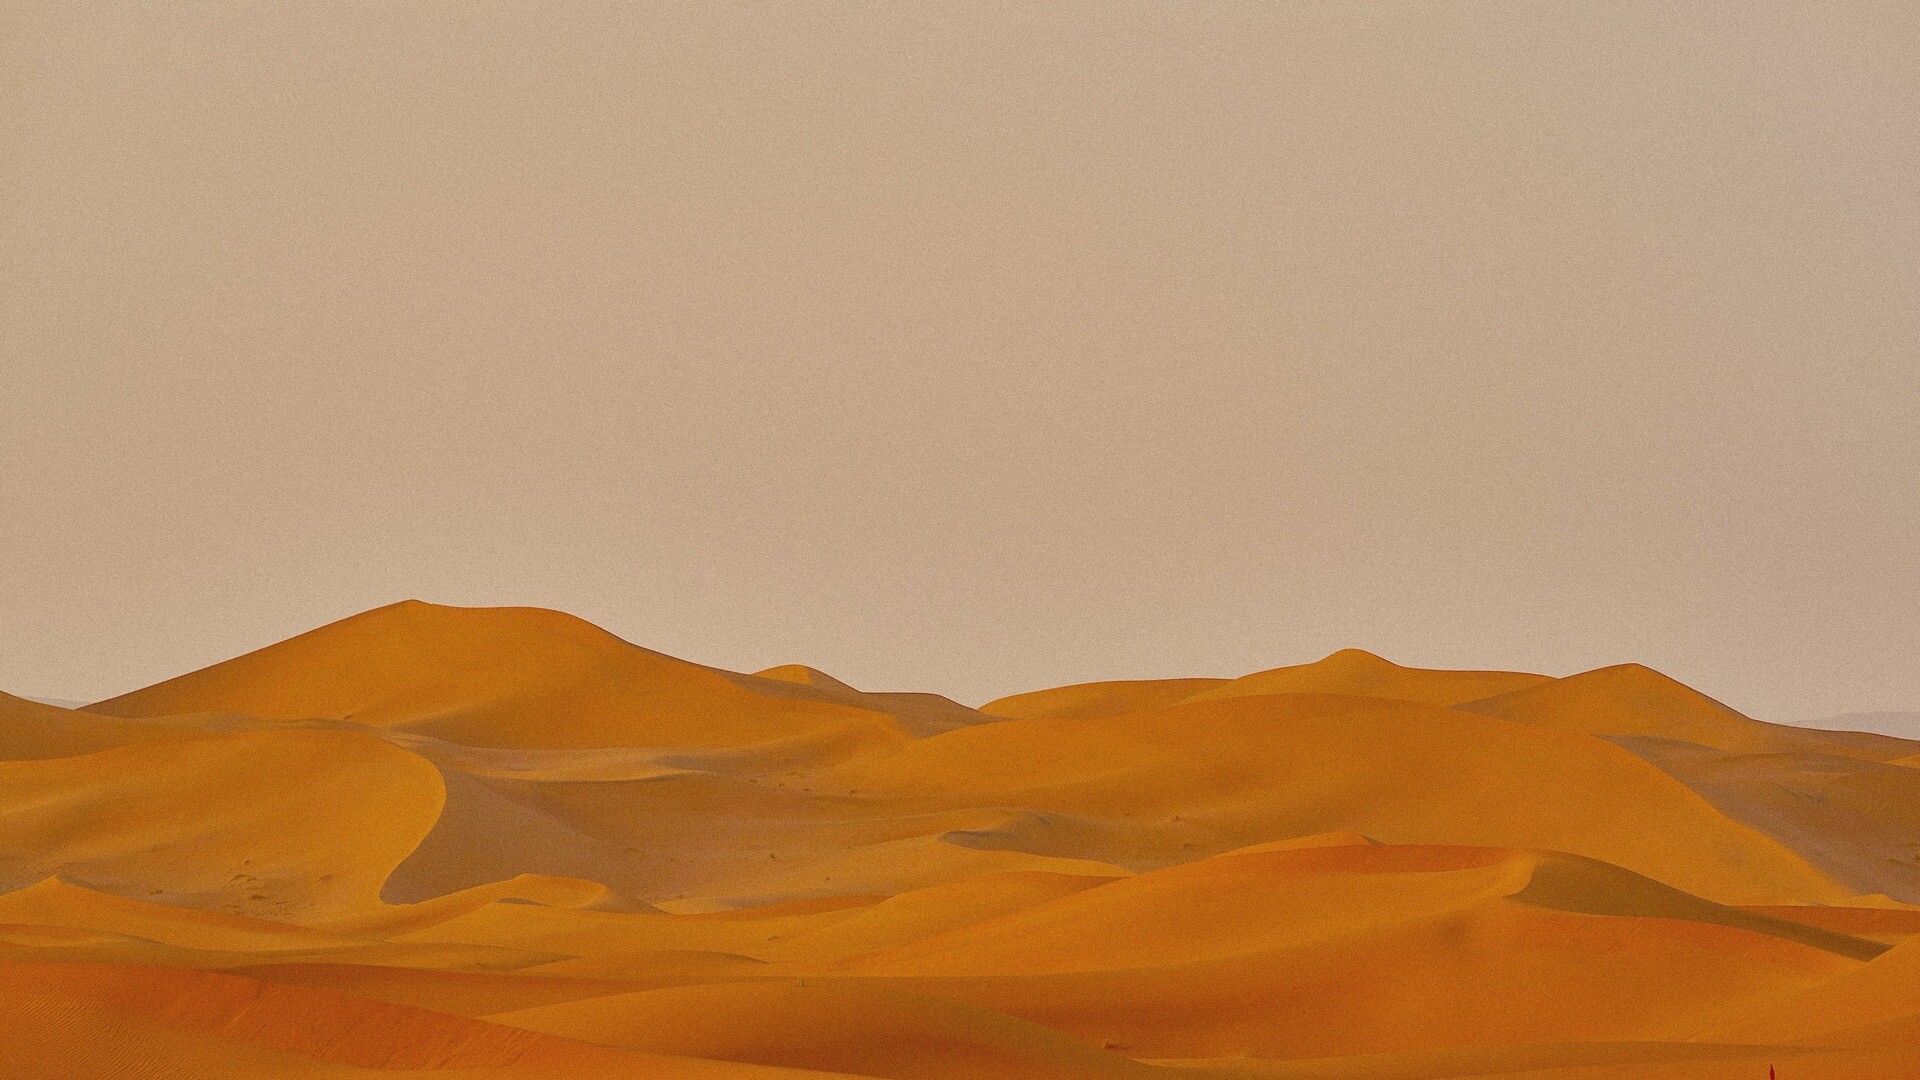 Desert day noisy喧嚣的沙漠之日Mac动态壁纸